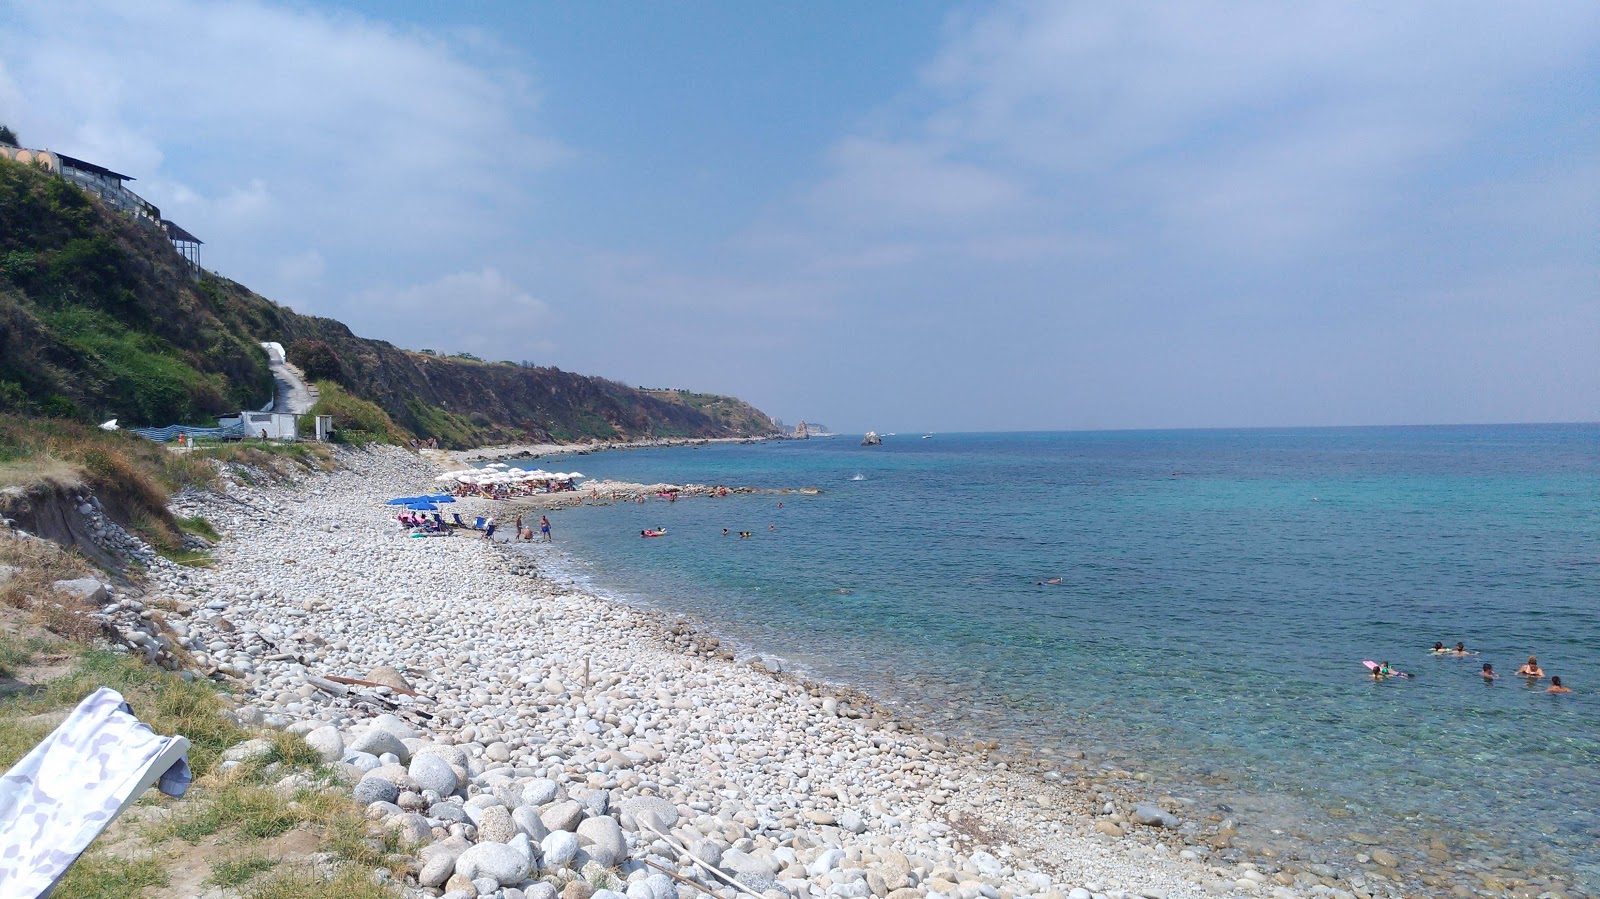 Spiaggia Michelino II'in fotoğrafı geniş plaj ile birlikte